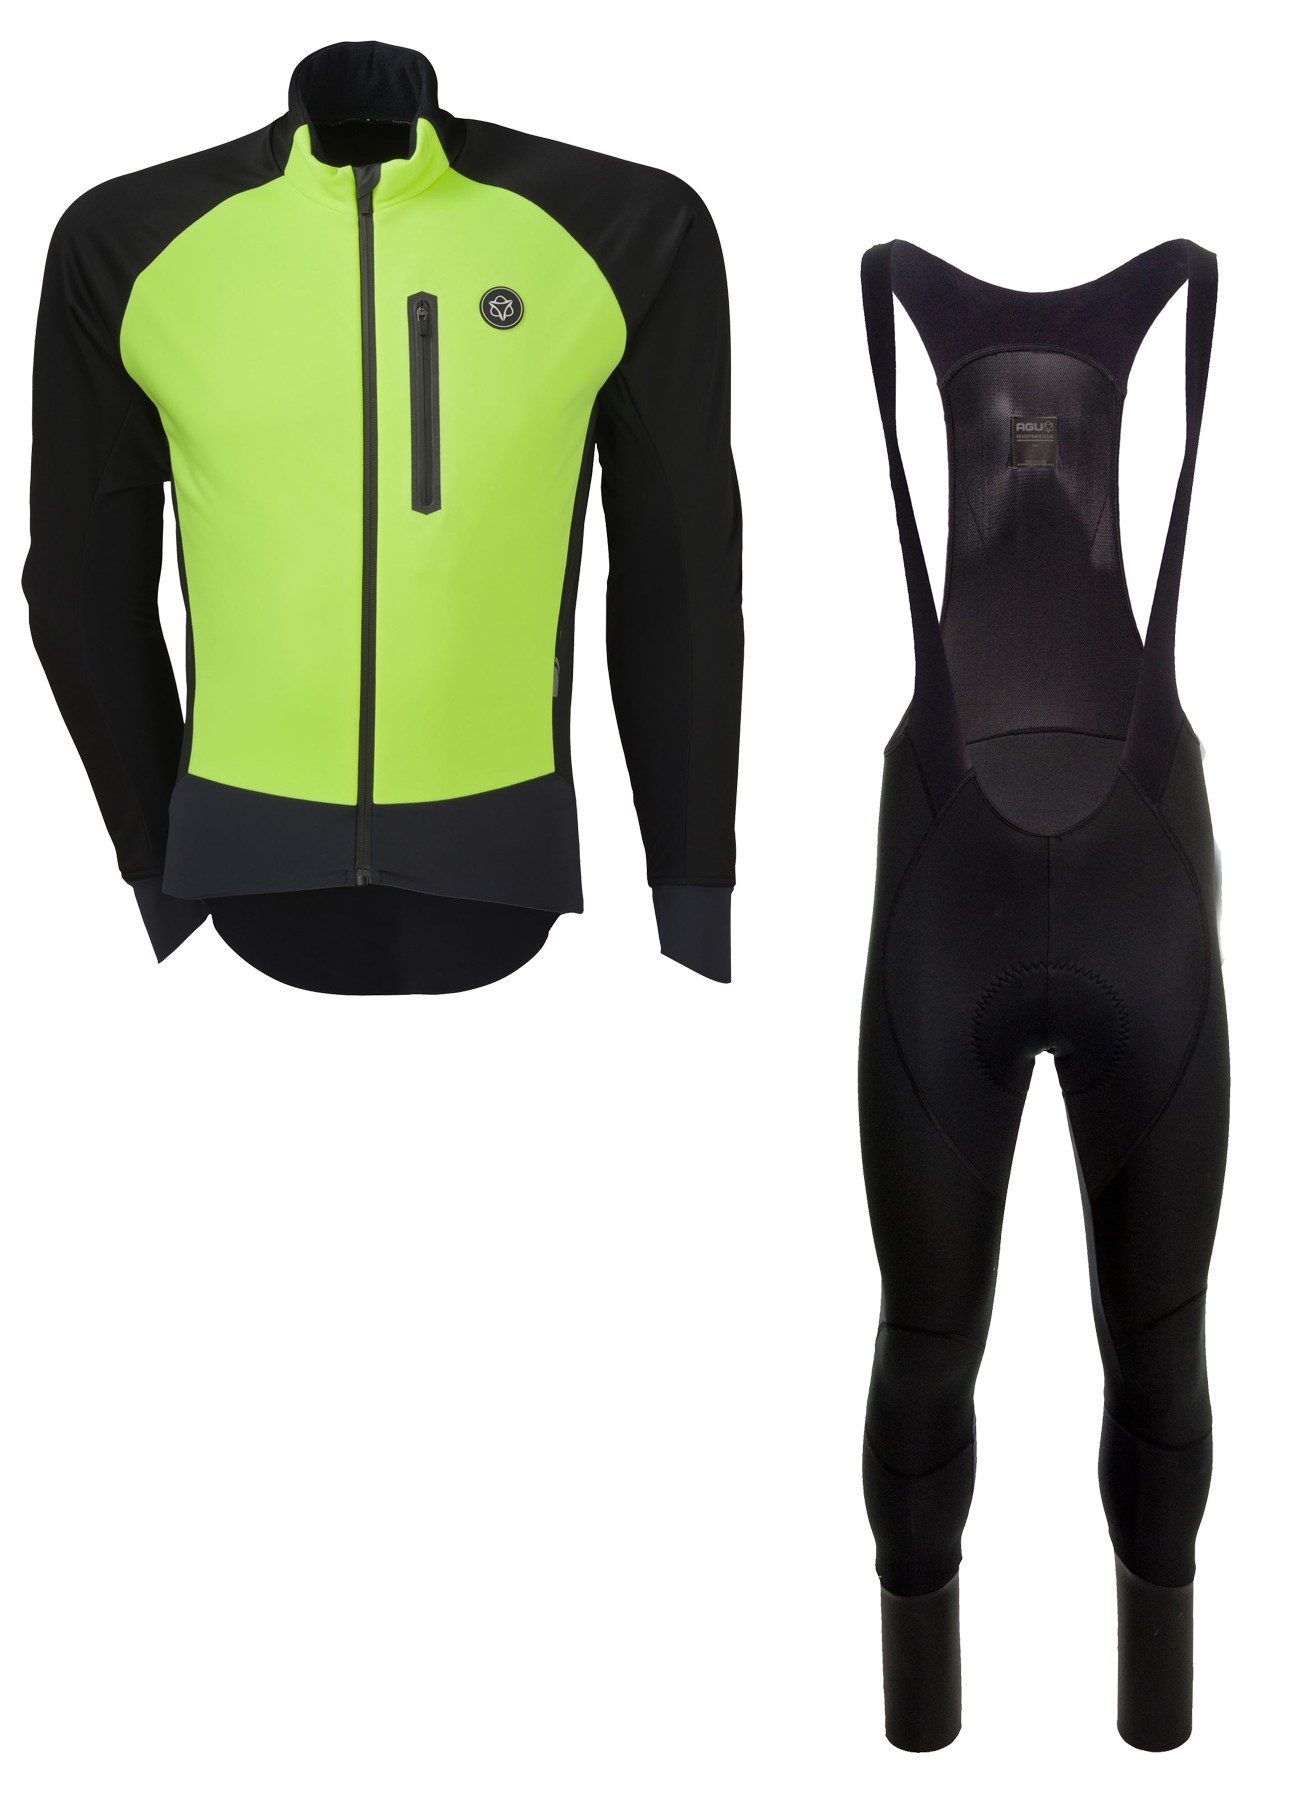 Agu pro winter softshell veste de cyclisme jaune fluorescent + Agu pro winter wind DWR cuissard long à bretelles noir set